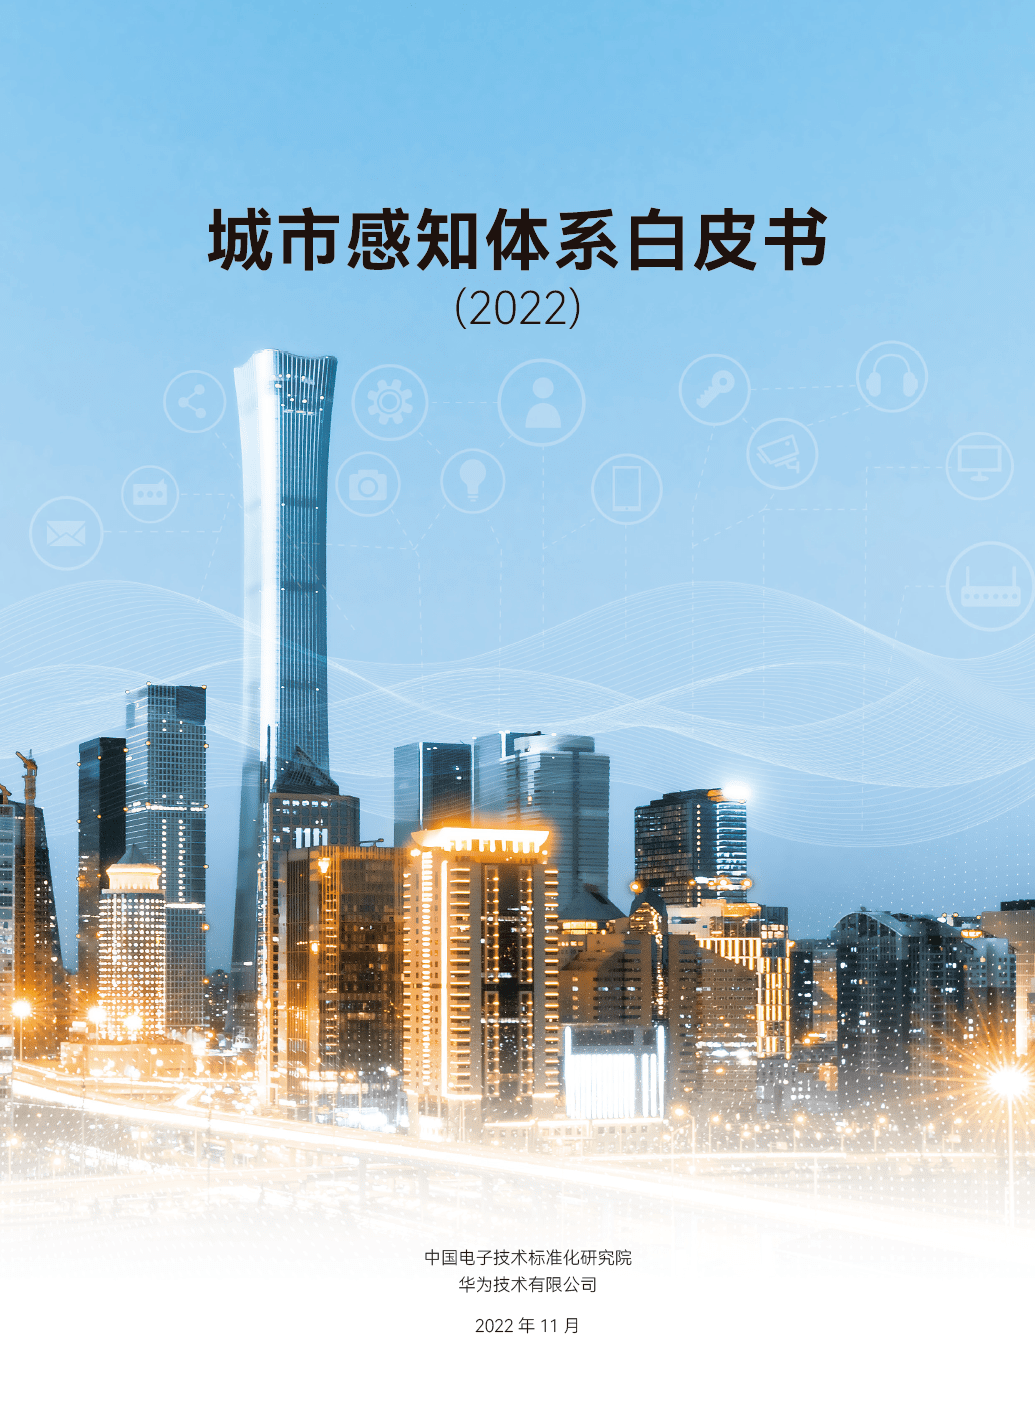 华为视觉中国手机壁纸
:为城市感知加码！电子标准院、华为、小视等单位发布《城市感知体系白皮书》